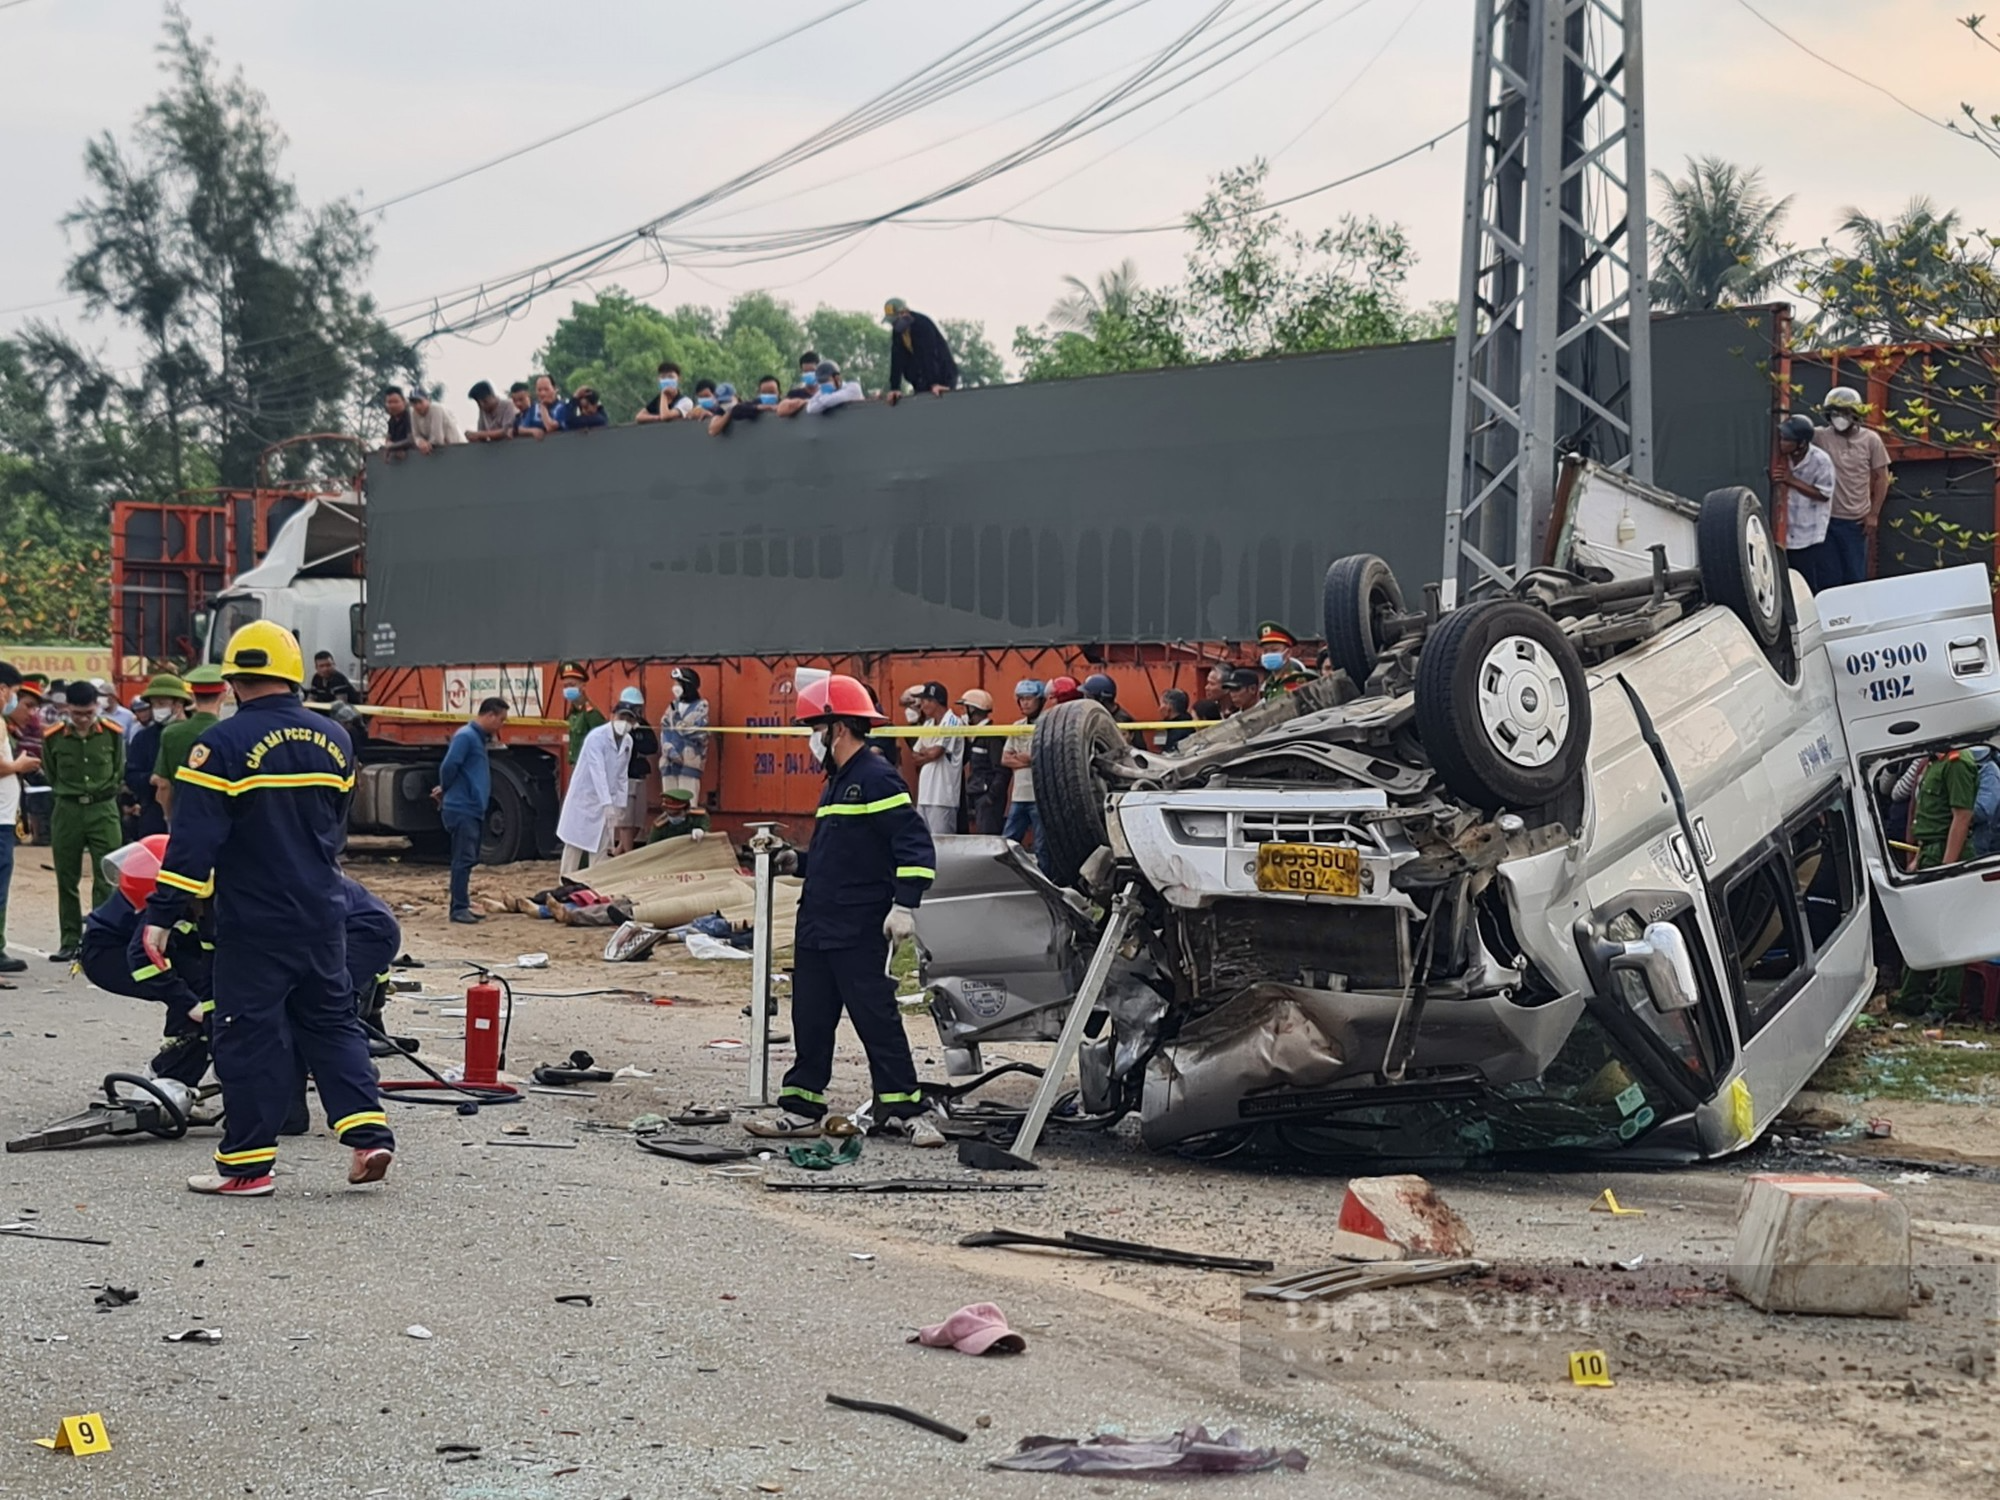 Quảng Nam sẽ “họp khẩn” tìm nguyên nhân sau 2 vụ tai nạn nghiêm trọng làm 13 người tử vong - Ảnh 4.